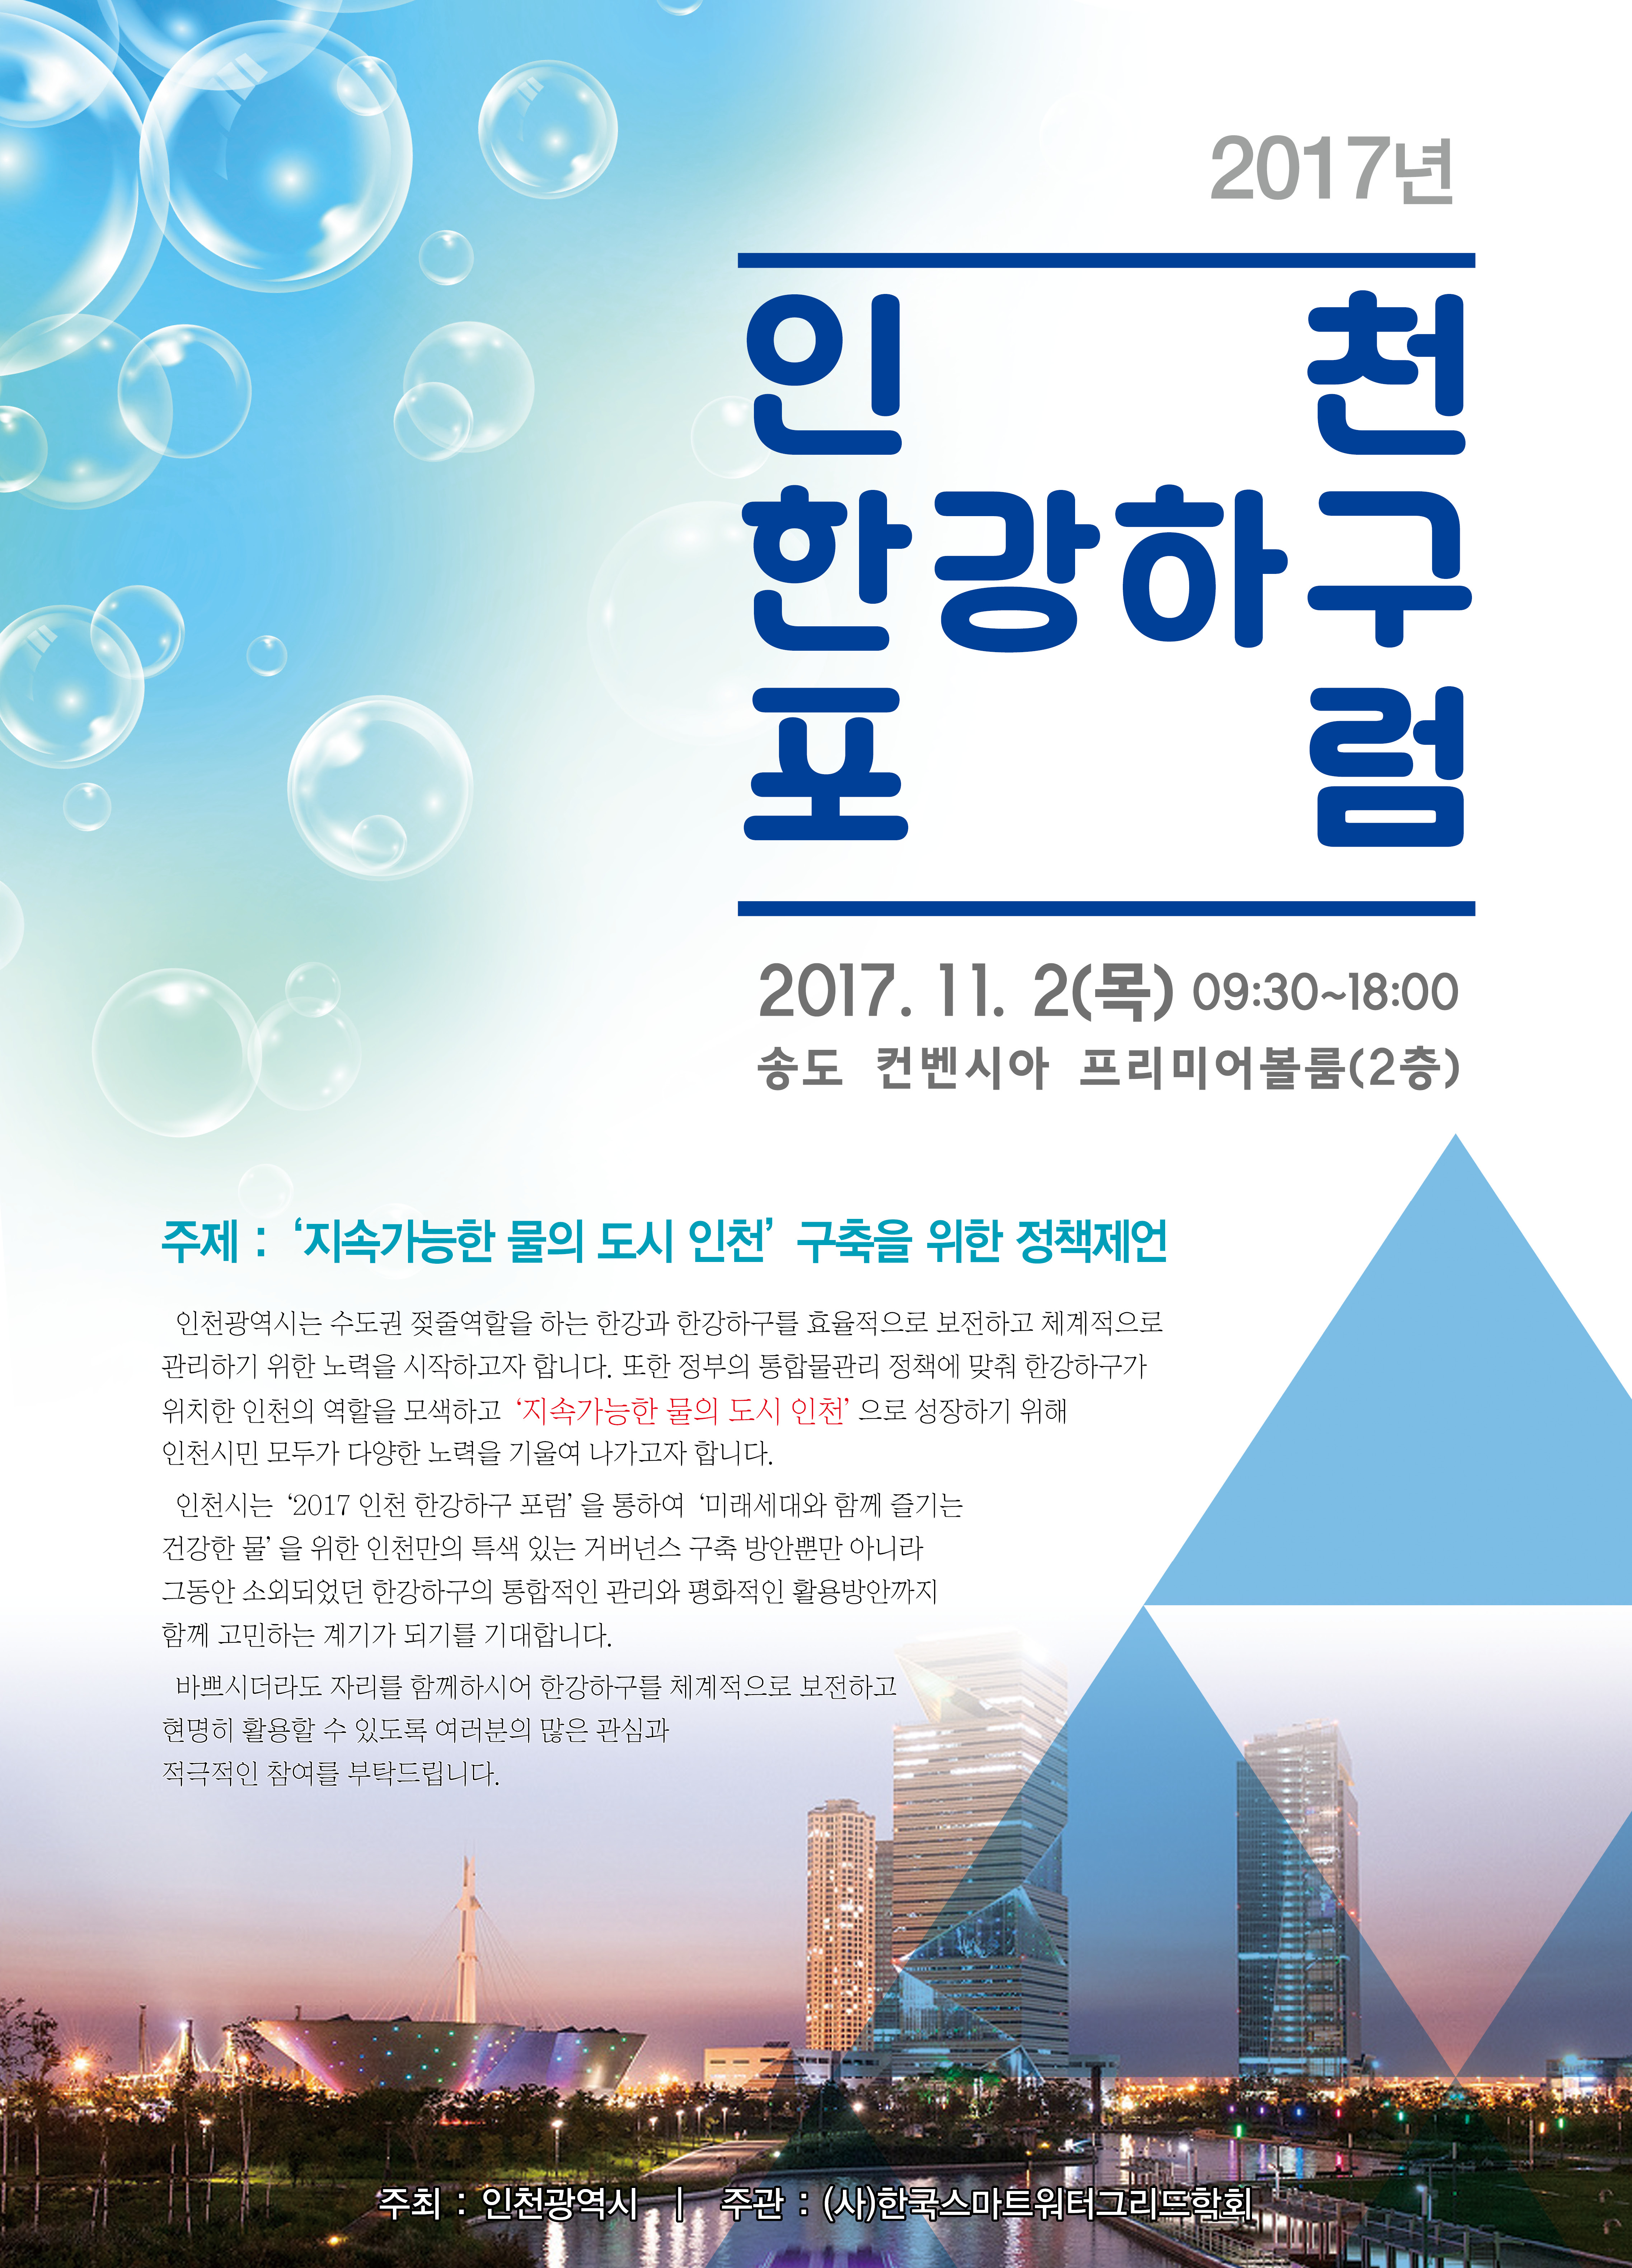 2017년 인천 한강하구 포럼 개최 안내